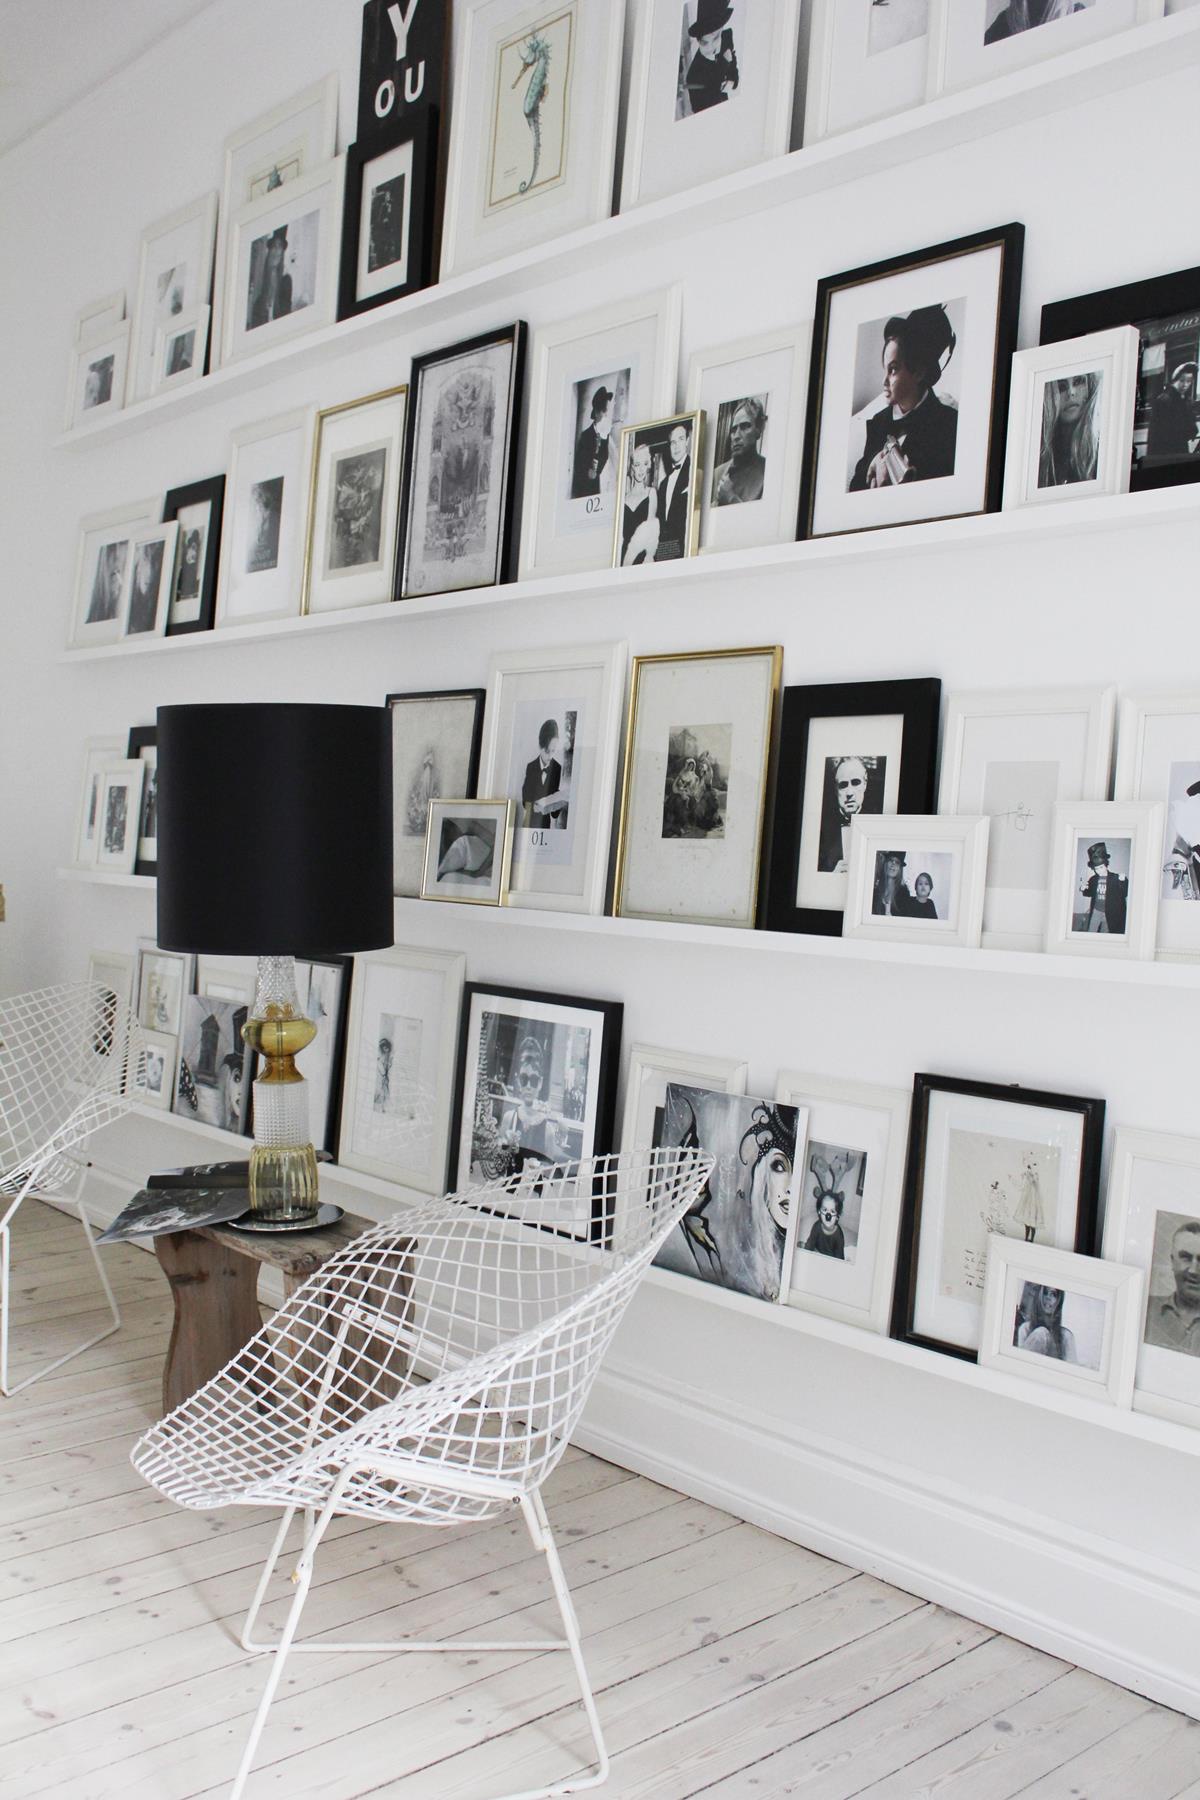 @projectfairytale: Annika von Holdt Dreamy Copenhagen Home